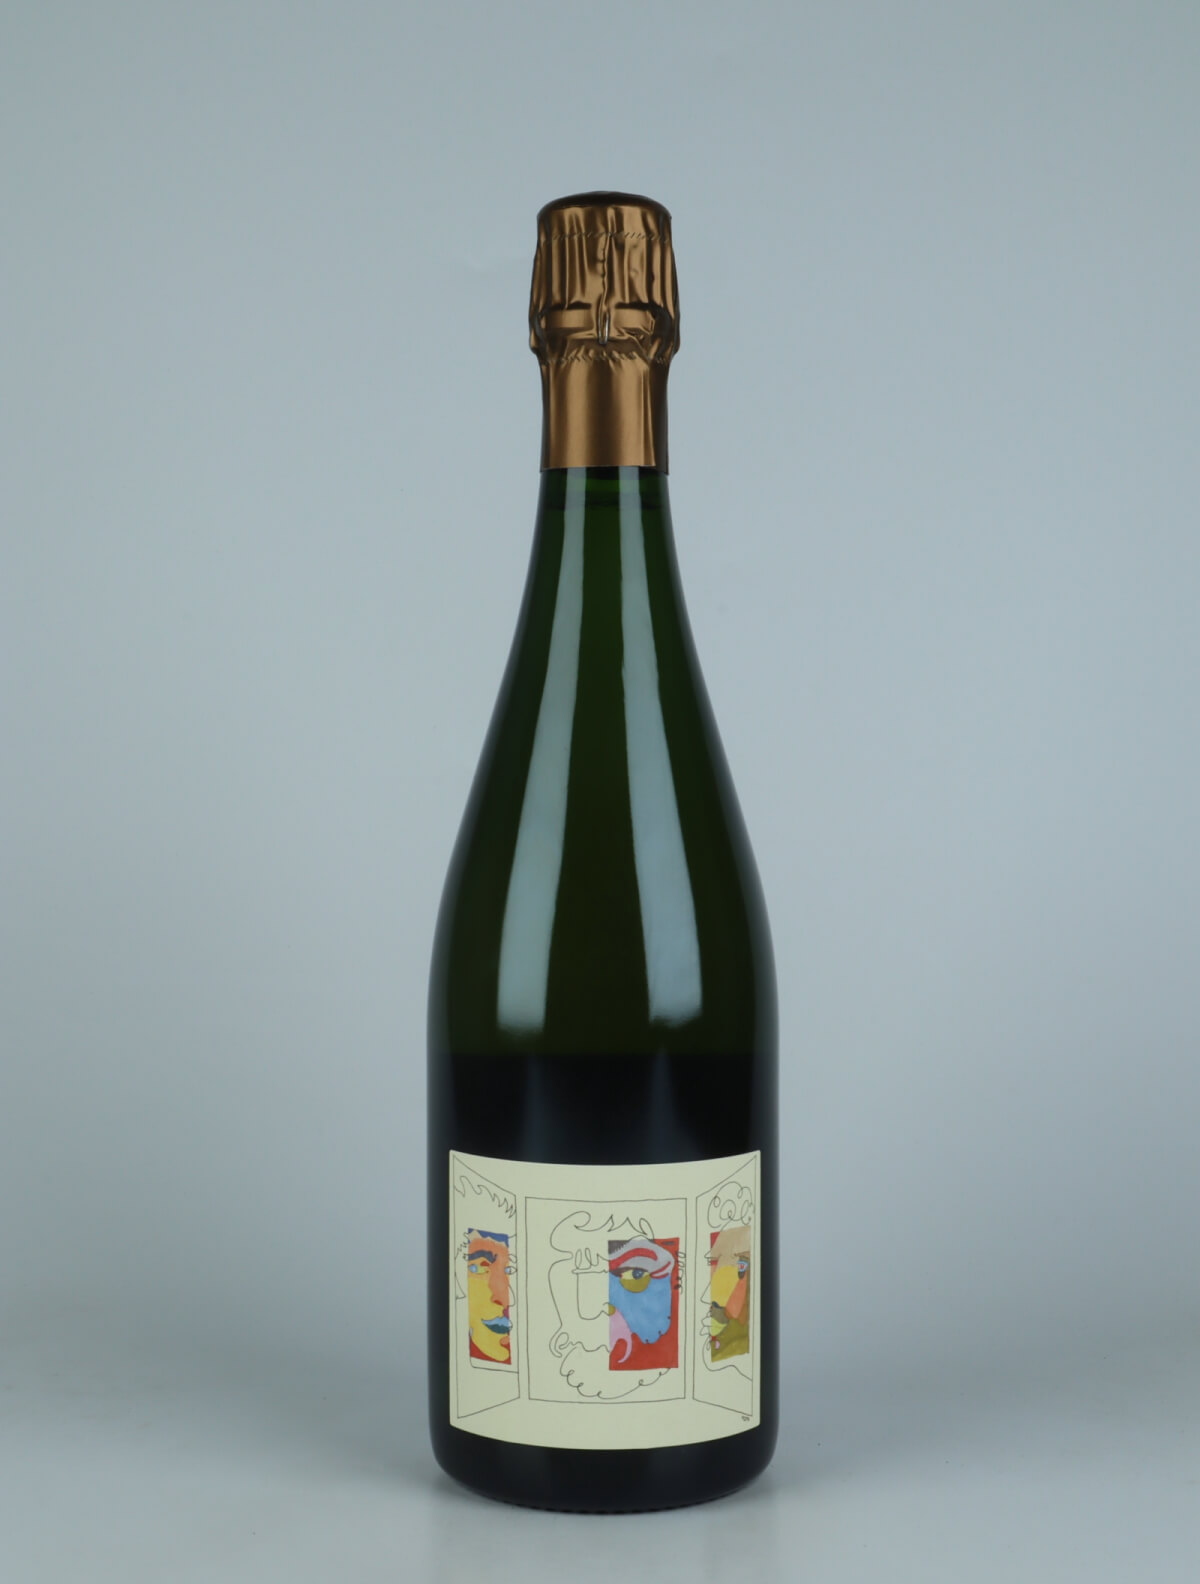 A bottle N.V. Triptyque (18/19) - Brut Nature Sparkling from Stroebel, Champagne in France